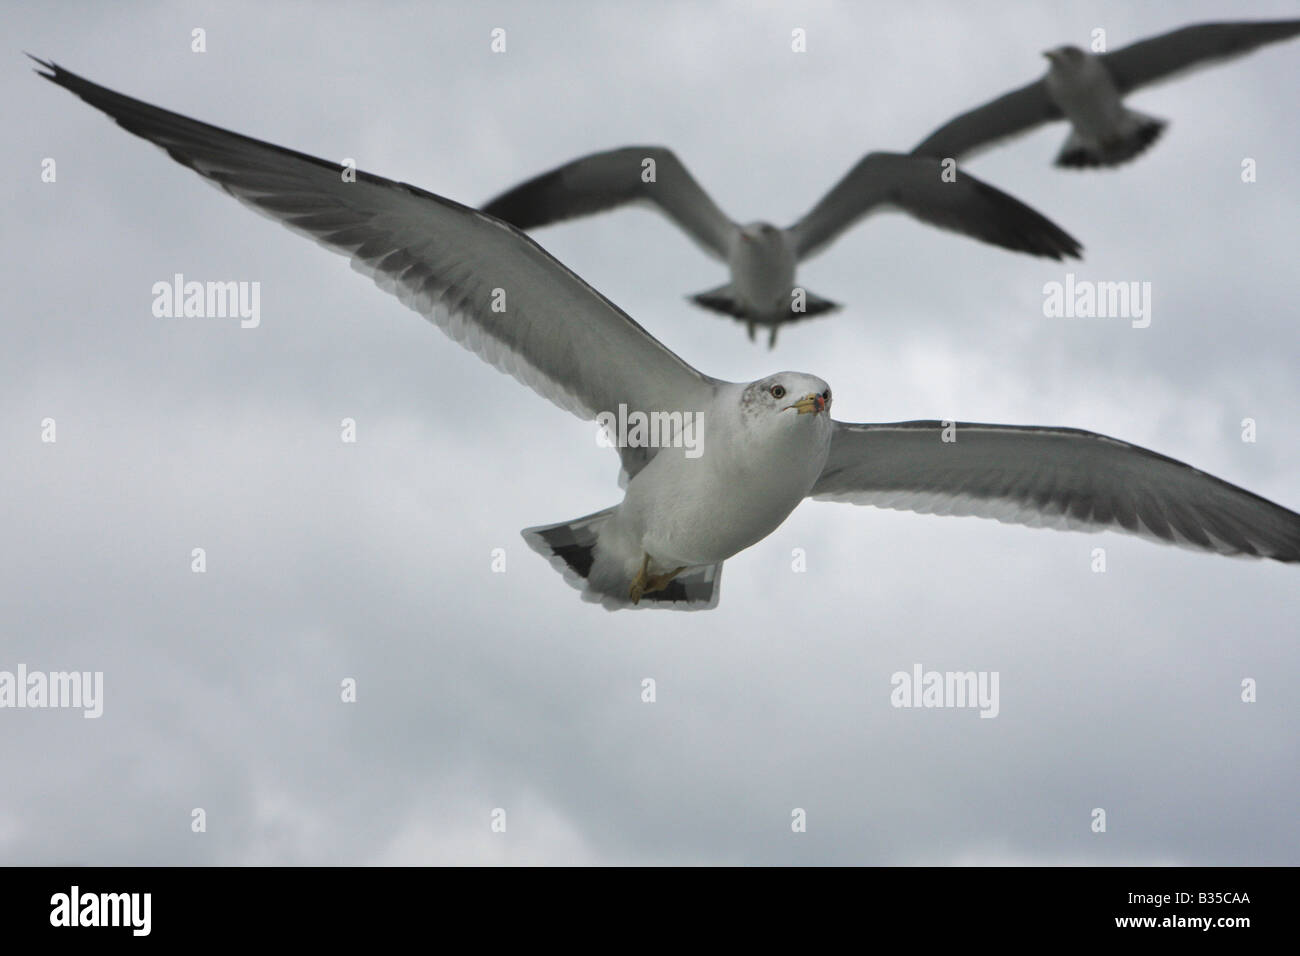 Seagulls in flight Stock Photo